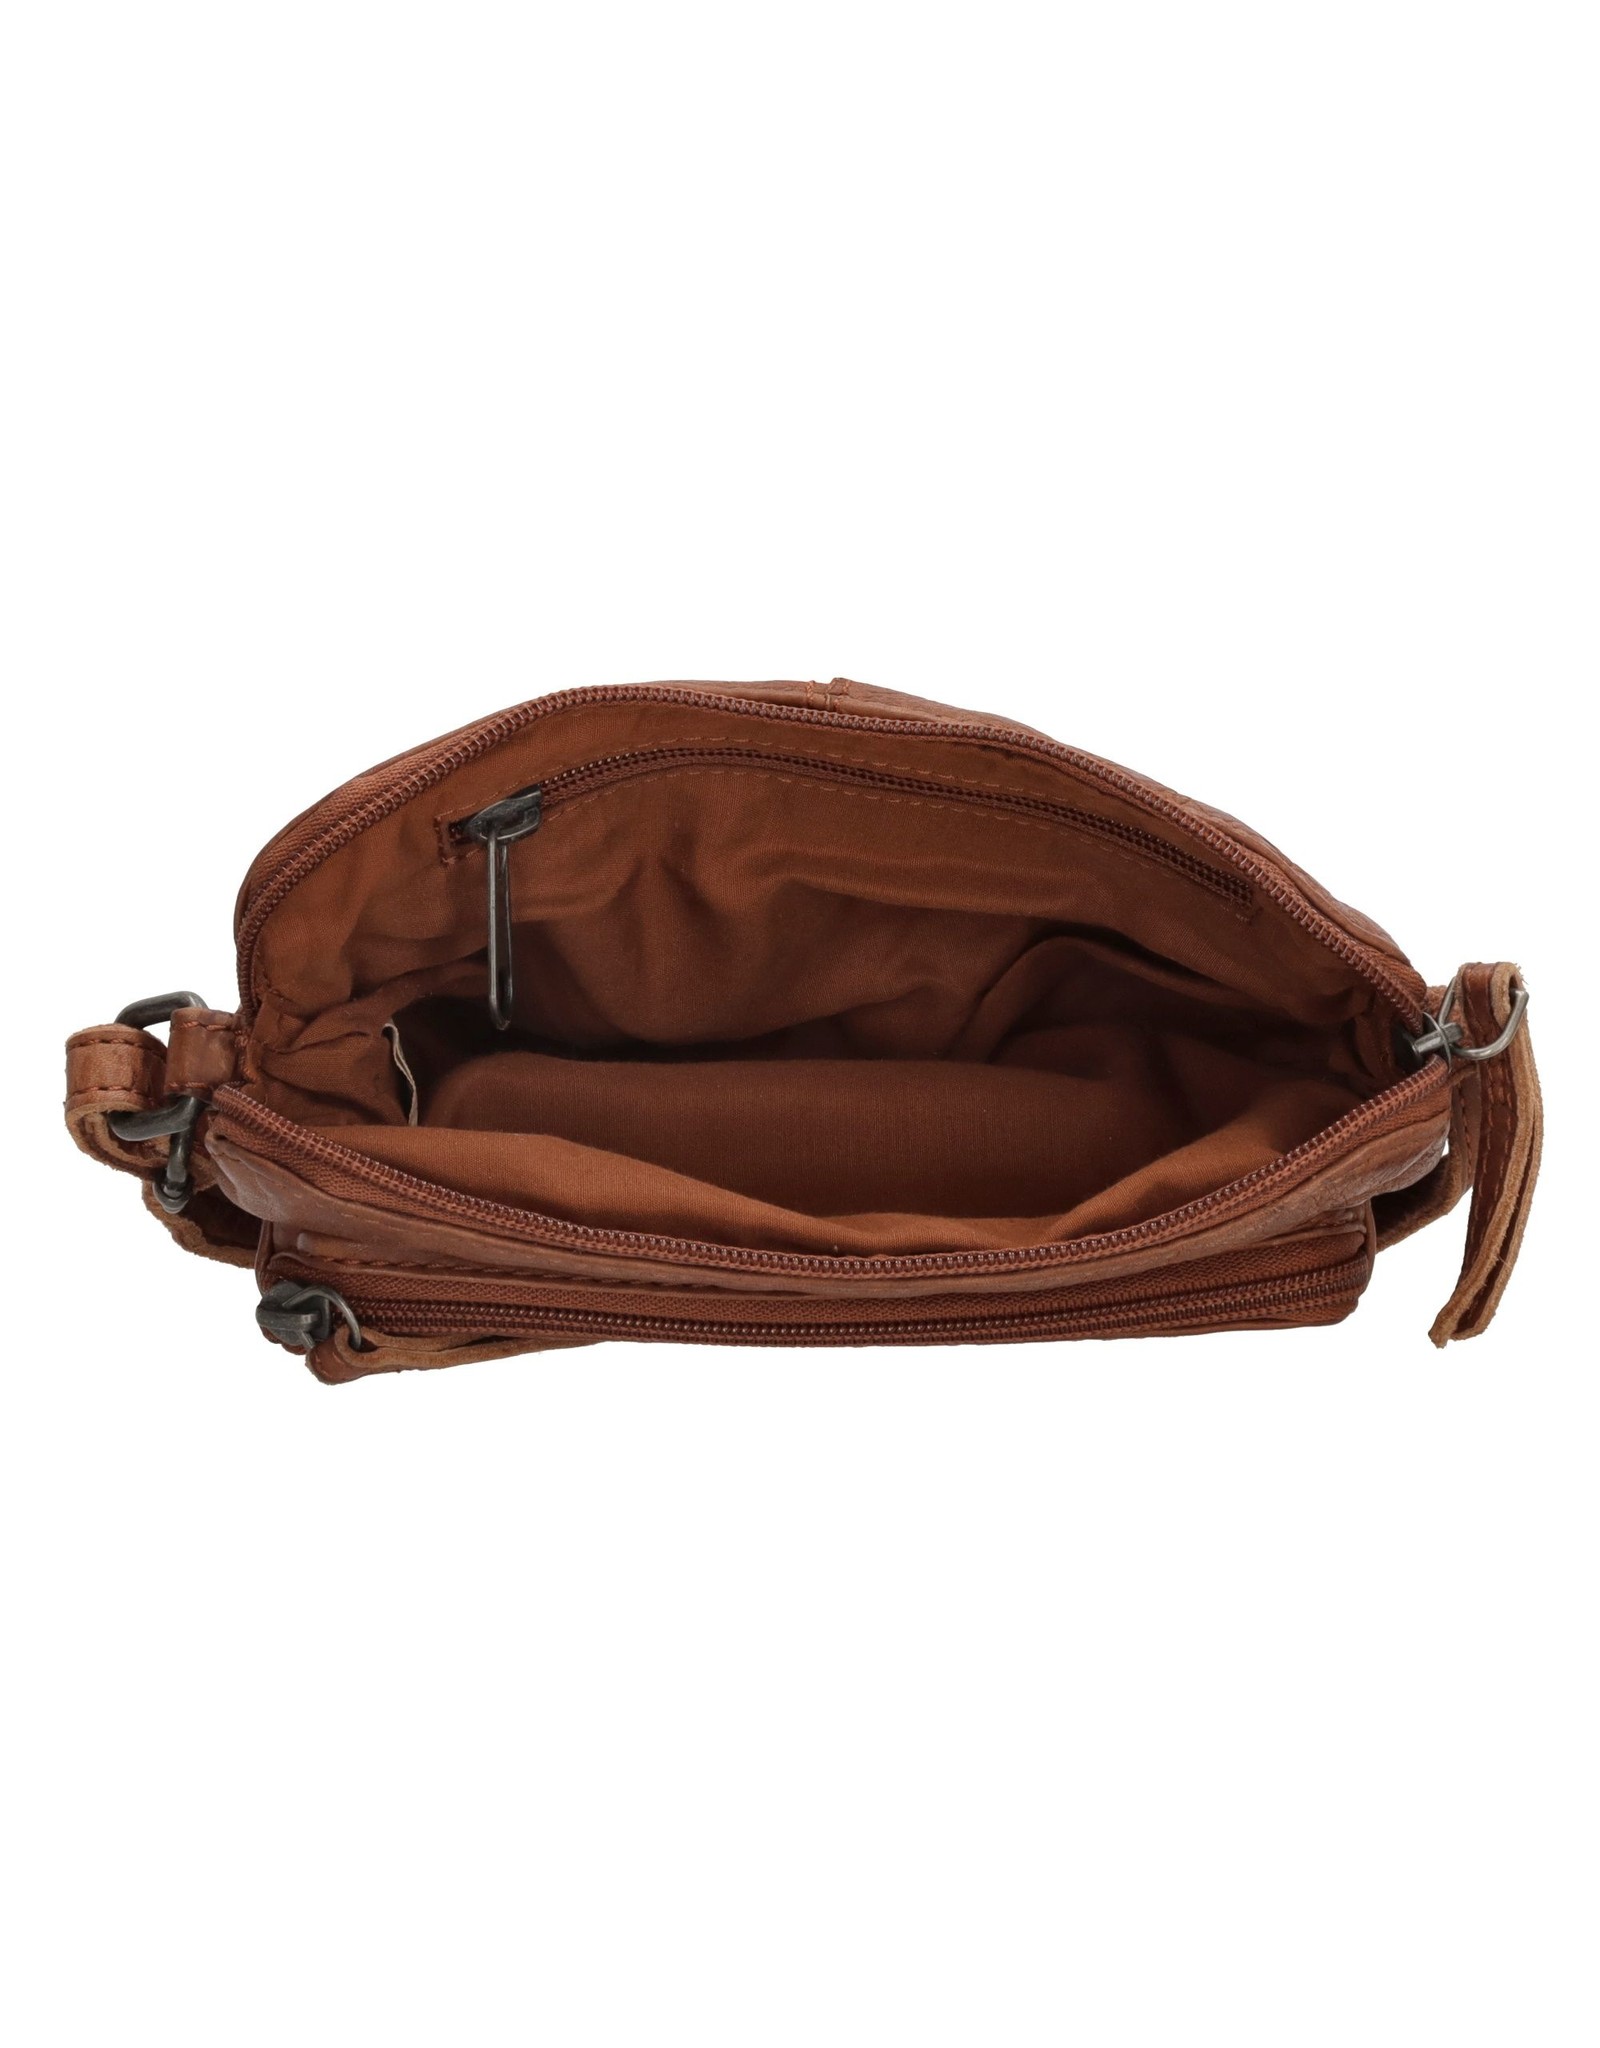 Hide & Stitches Leather Festival bags, waist bags and belt bags - Hide & Stitches Festival Bag Washed Leather Cognac